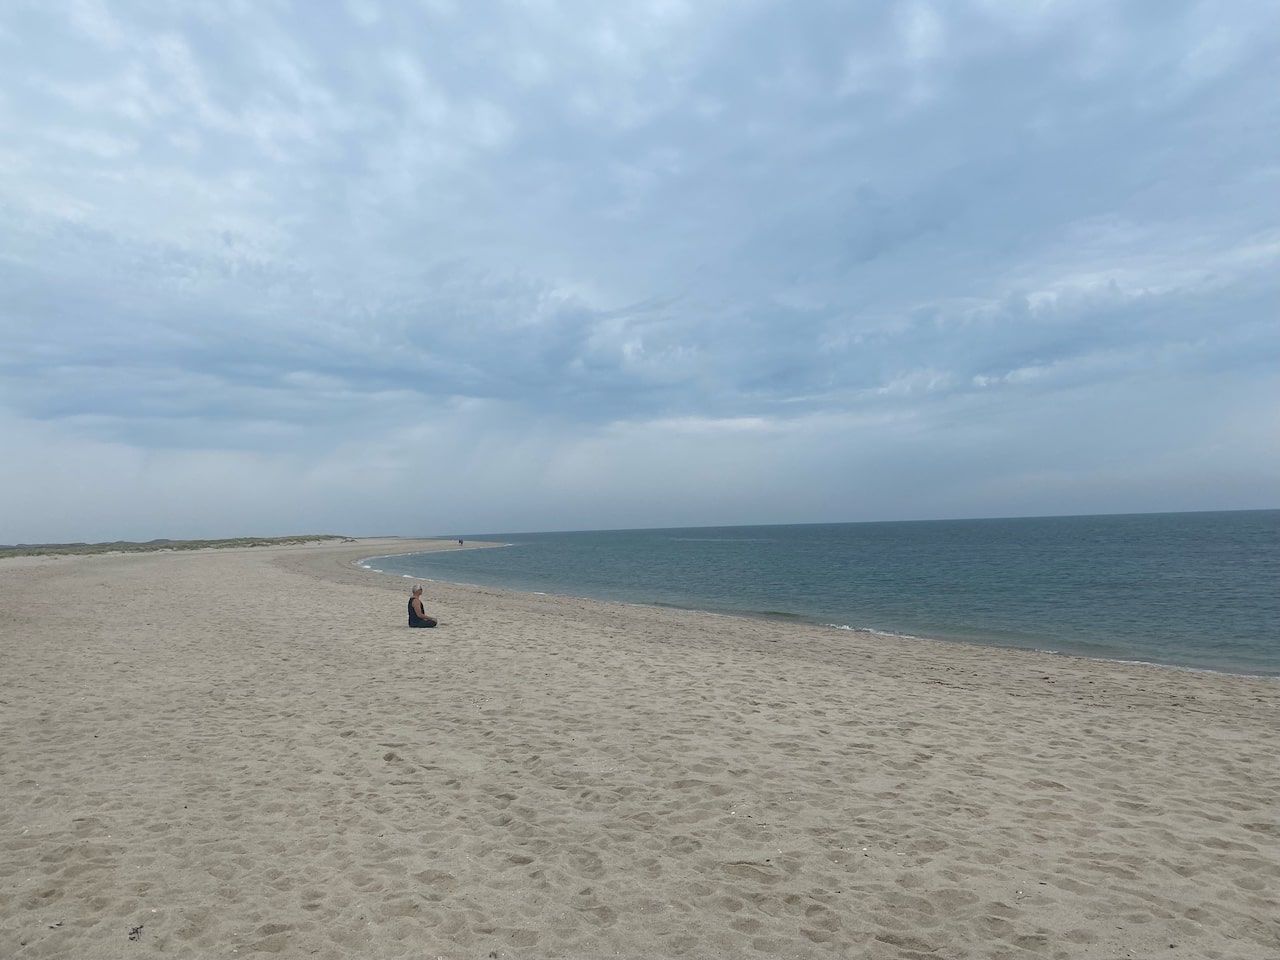 Una persona se sienta en una playa de arena bajo un cielo nublado y disfruta de la paz y la belleza del paisaje natural.